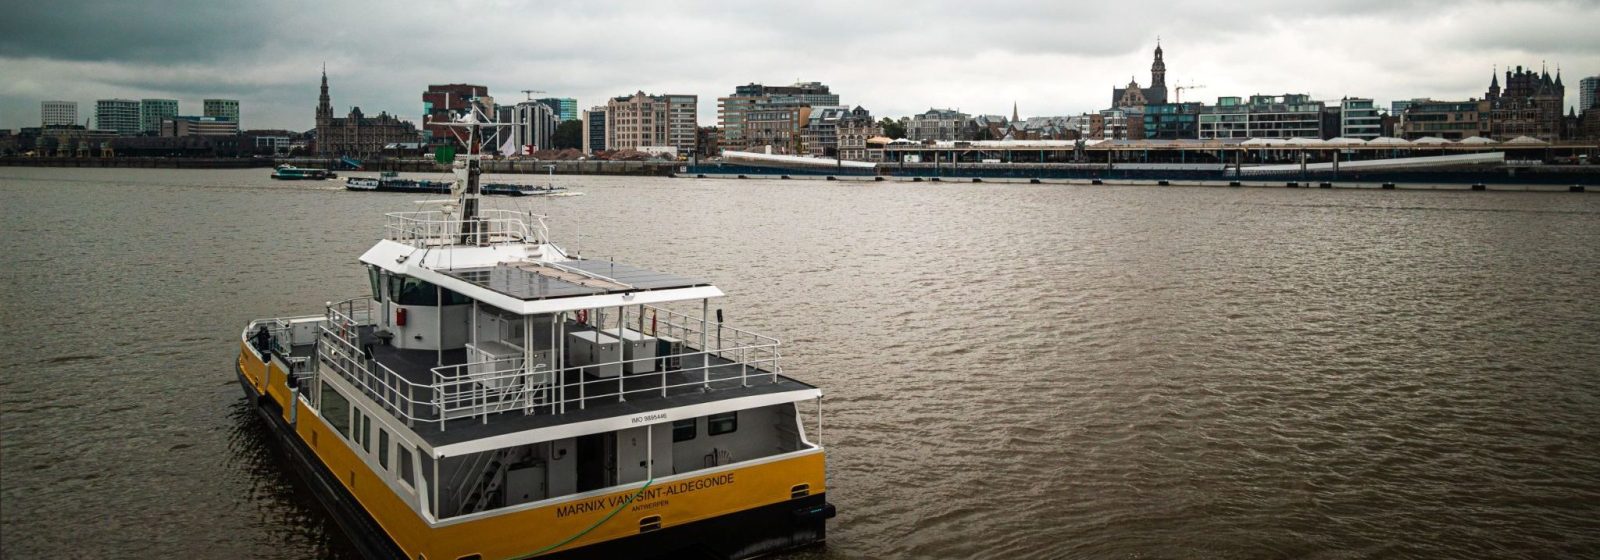 Antwerpen Veerboot 'Marnix Van Sint-Aldegonde'